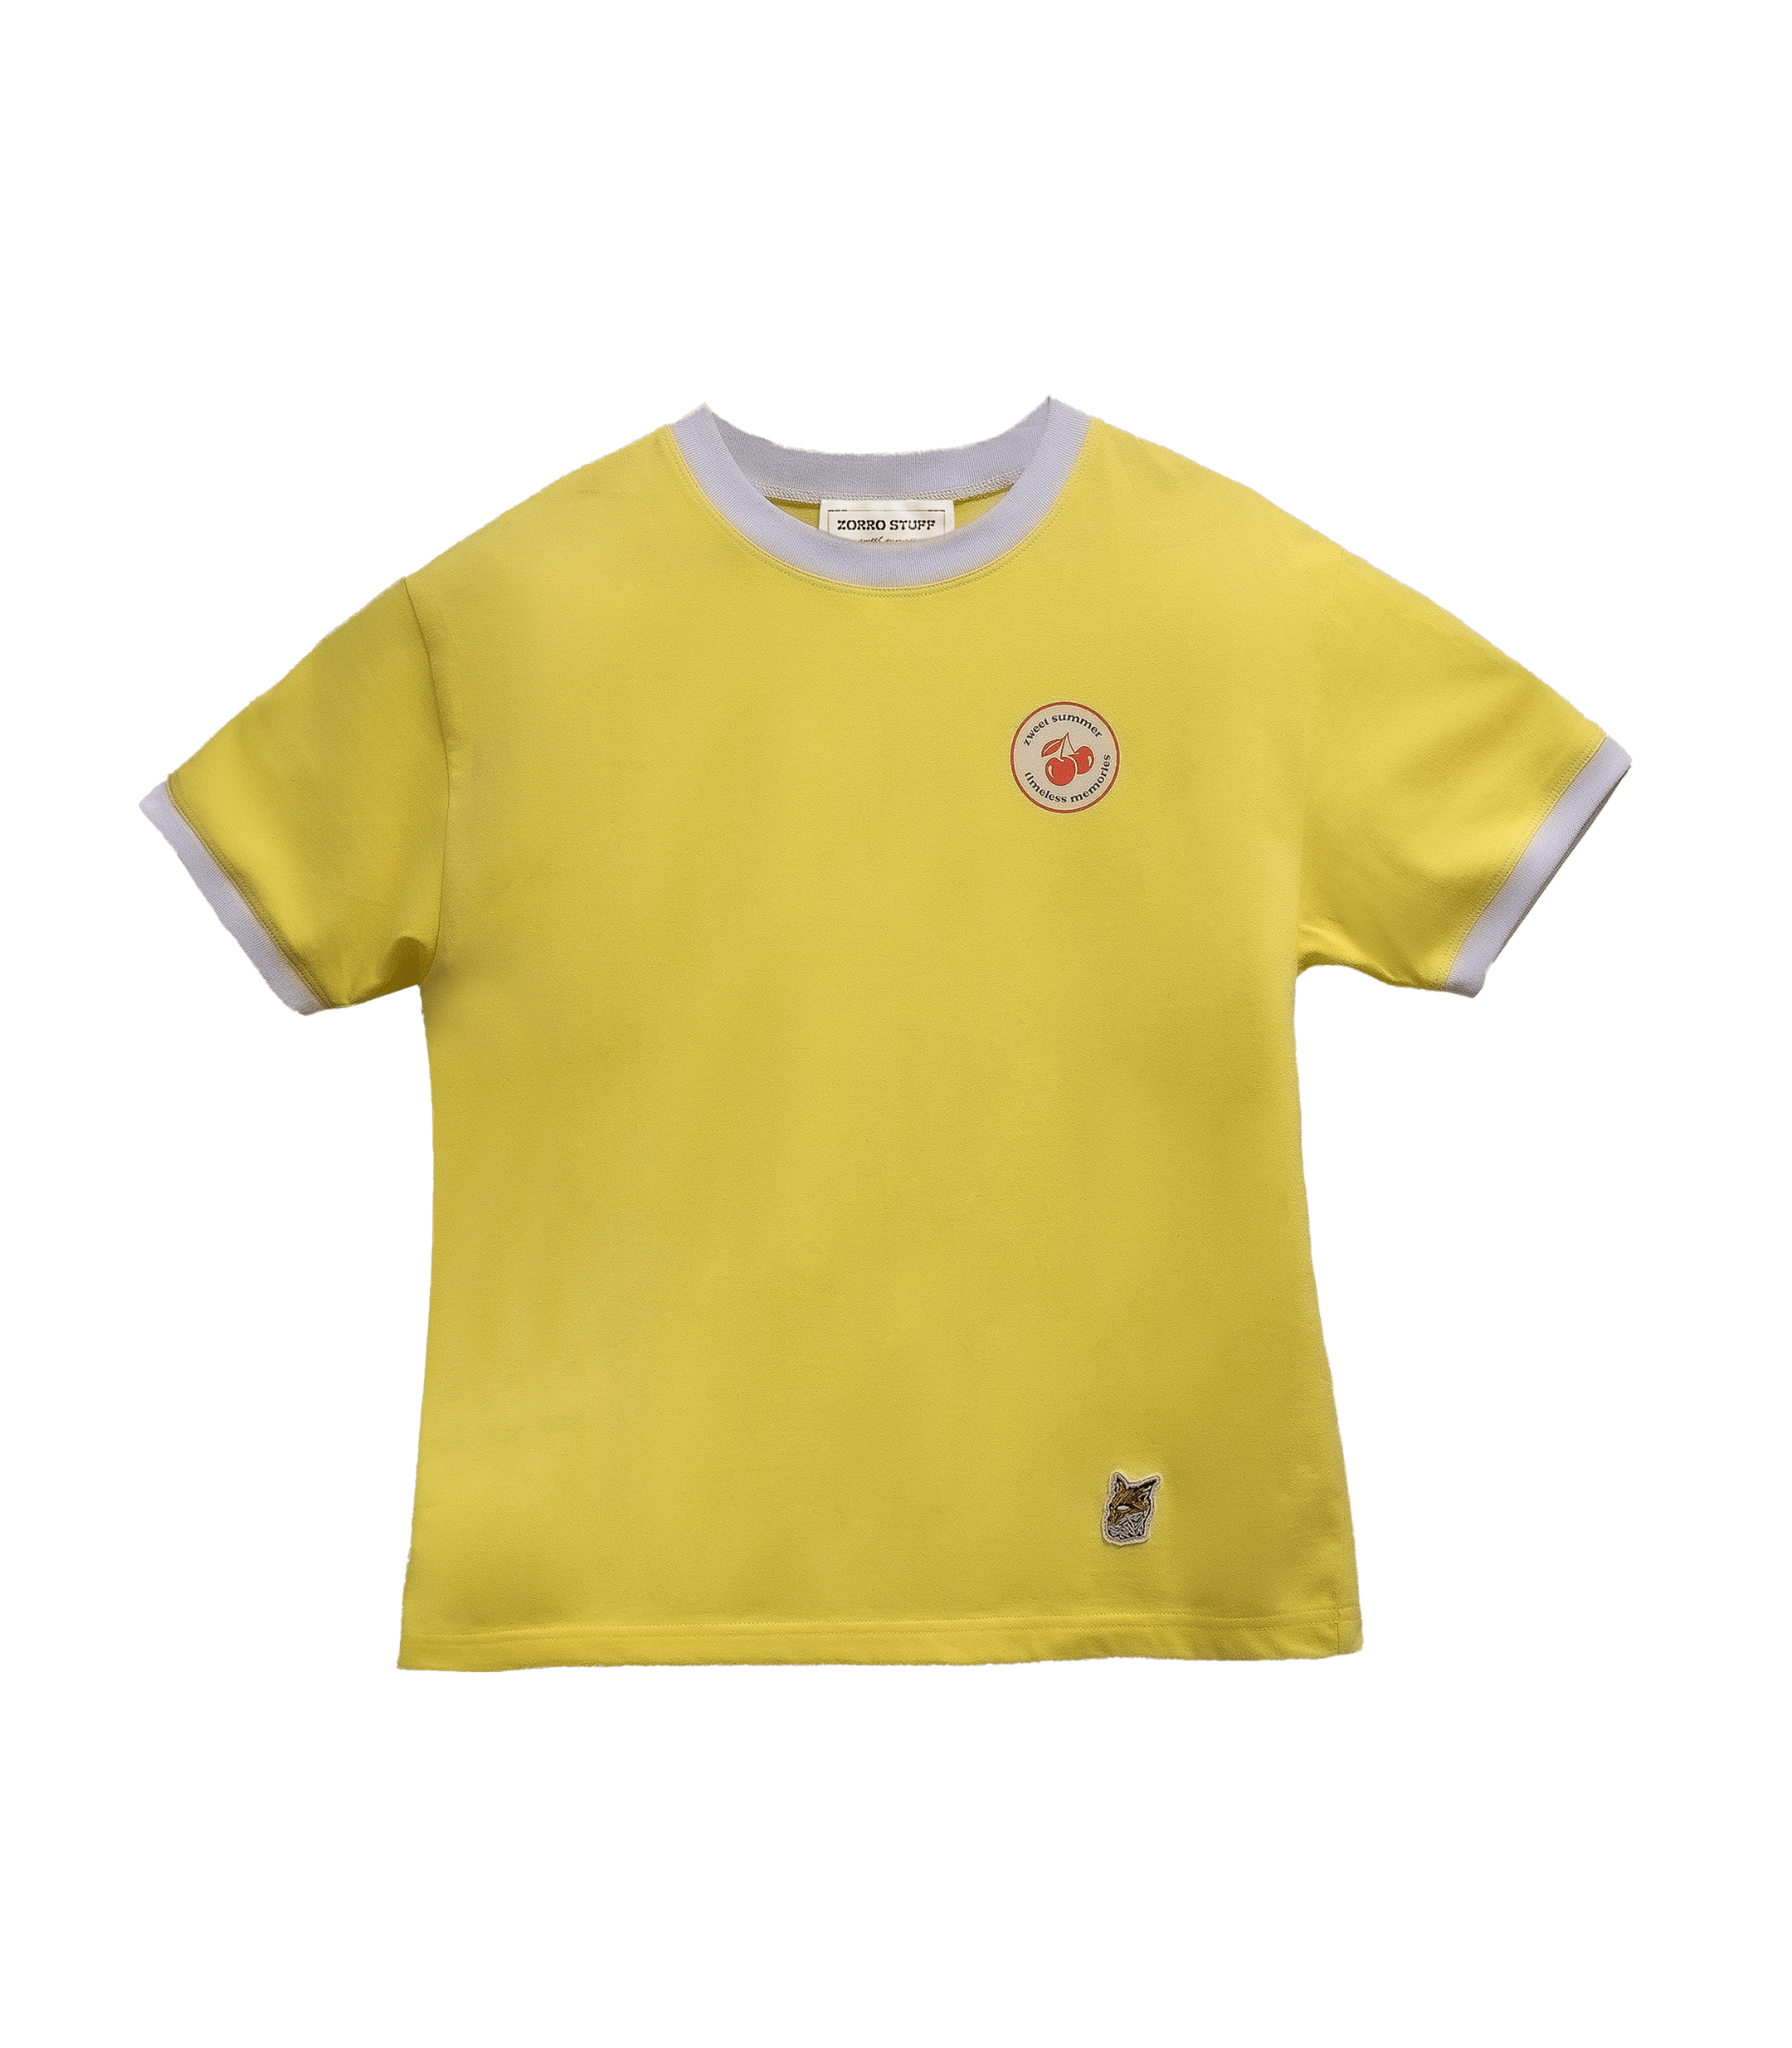 Zorro Stuff T-Shirts 80s T-Shirt Cherry Yellow